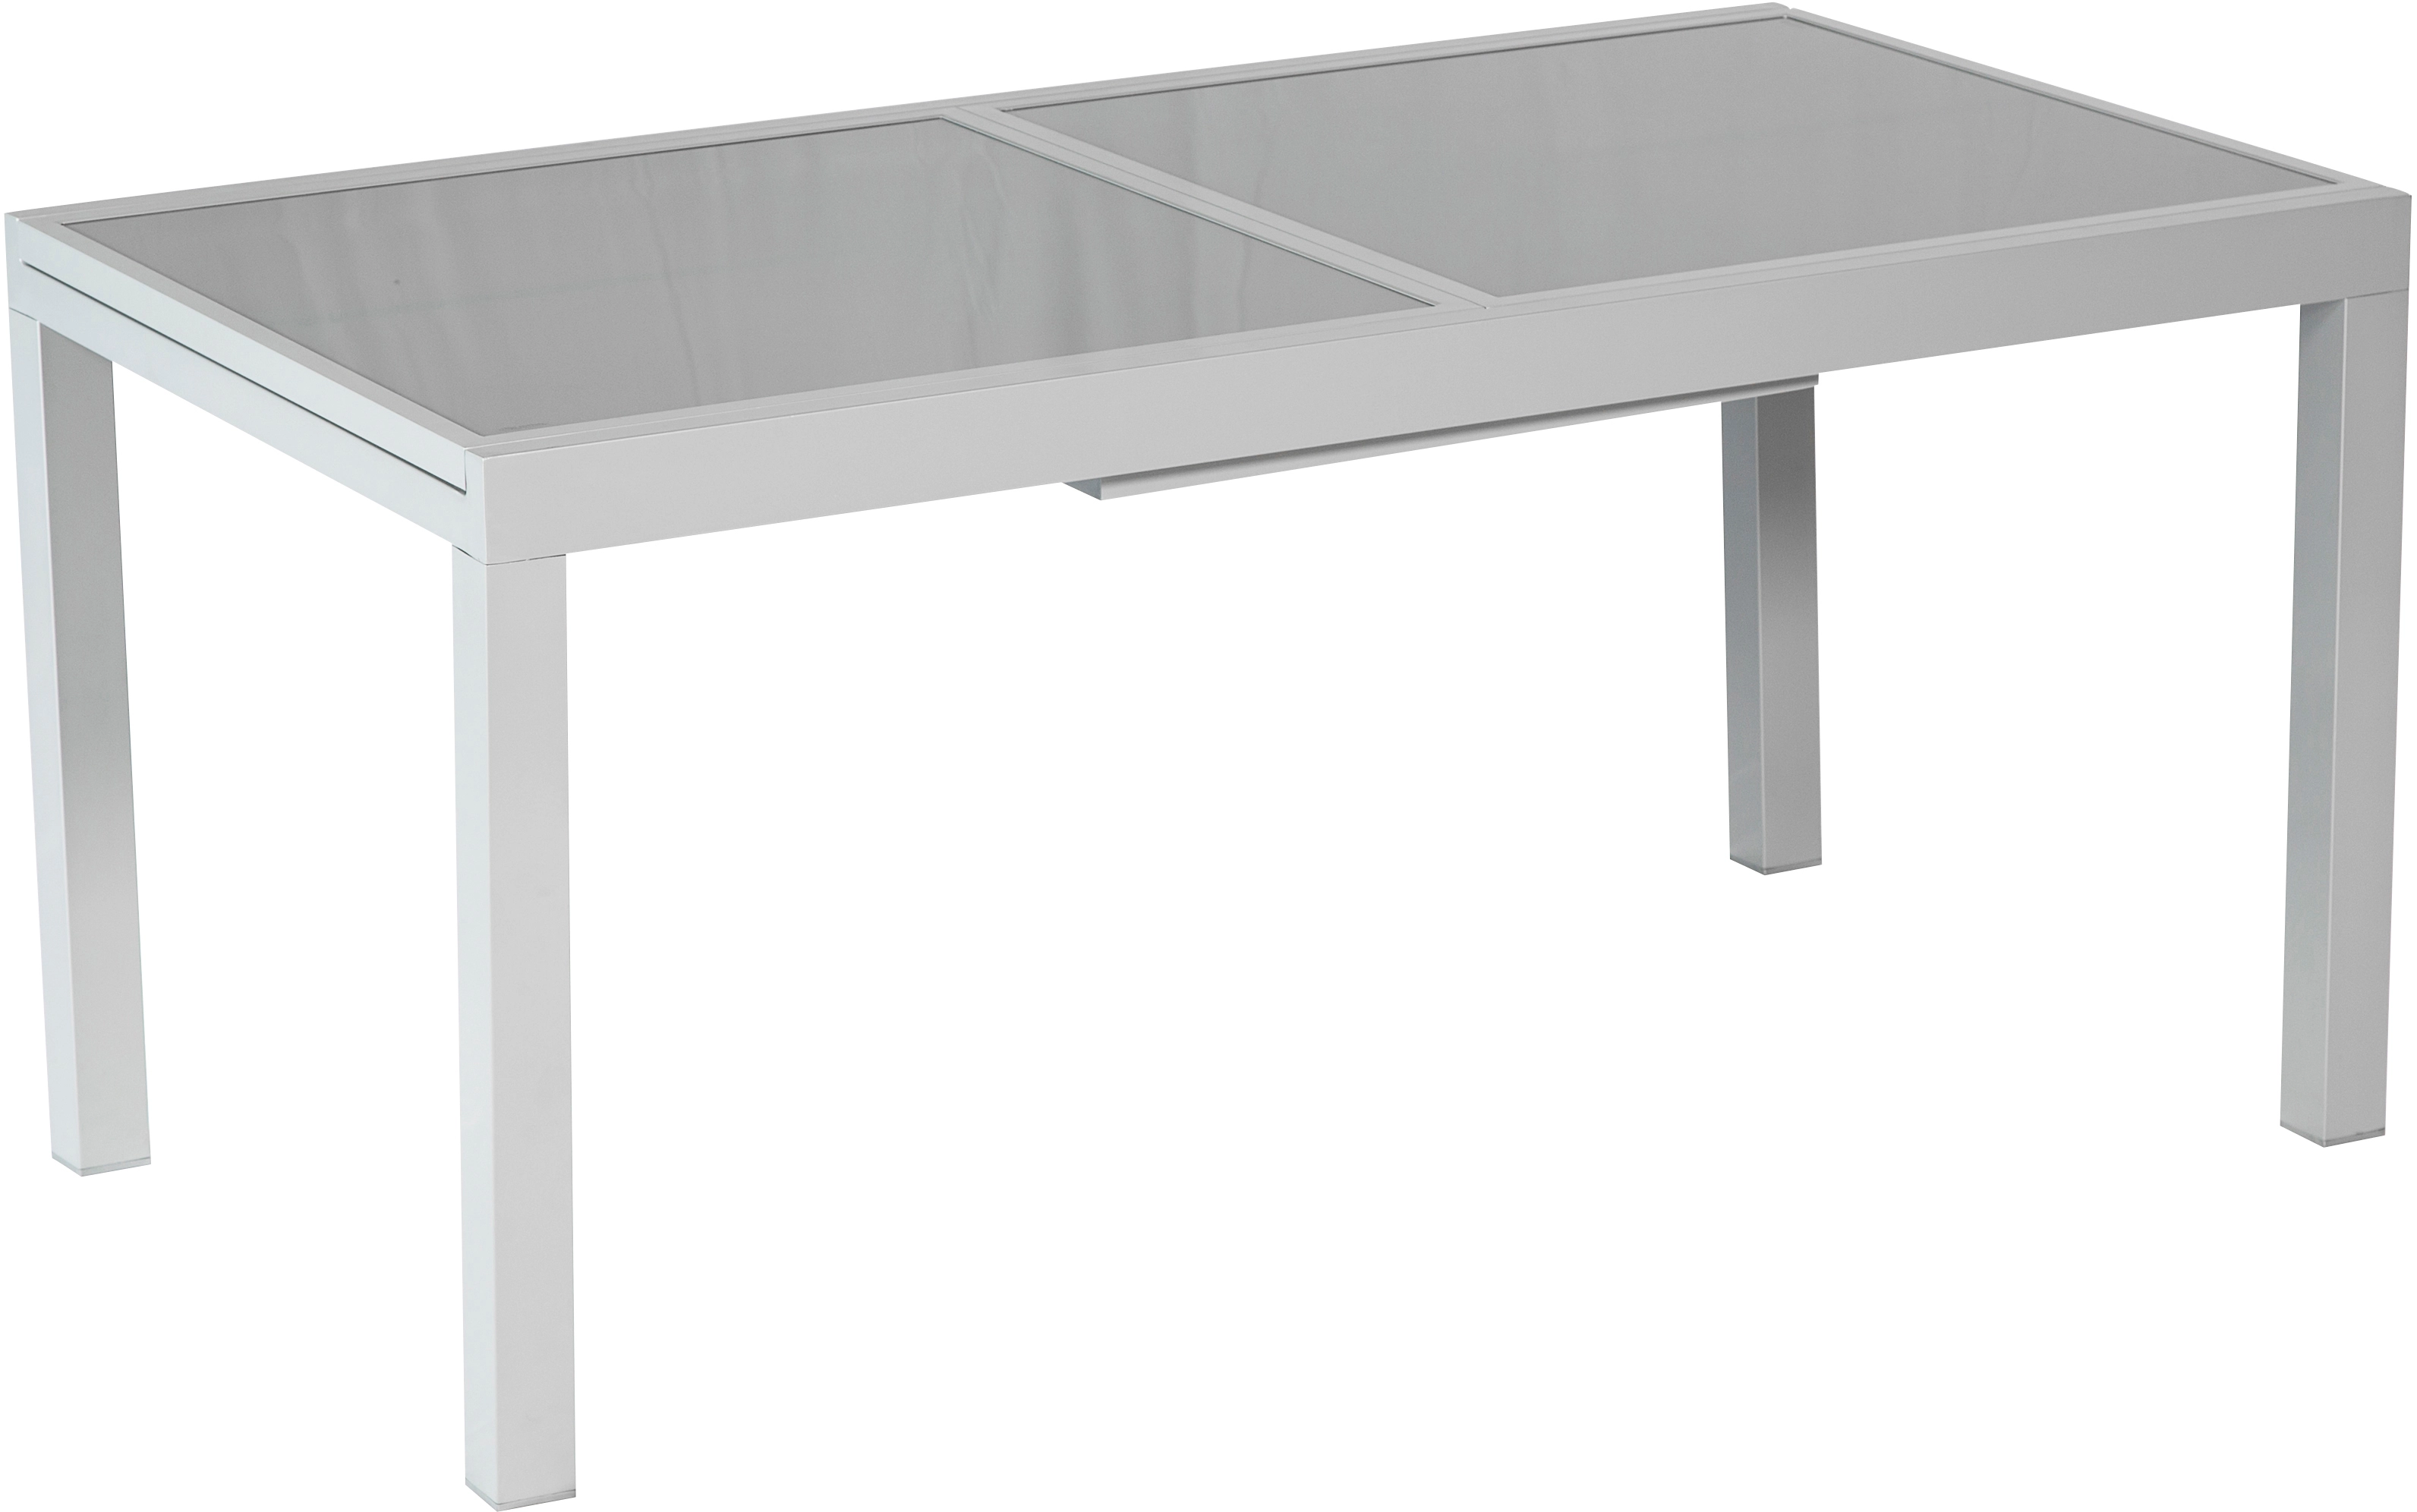 Merxx Gartentisch Rechteckig Aluminium Grau Ausziehbar 120/180 cm x 90 cm | Tische